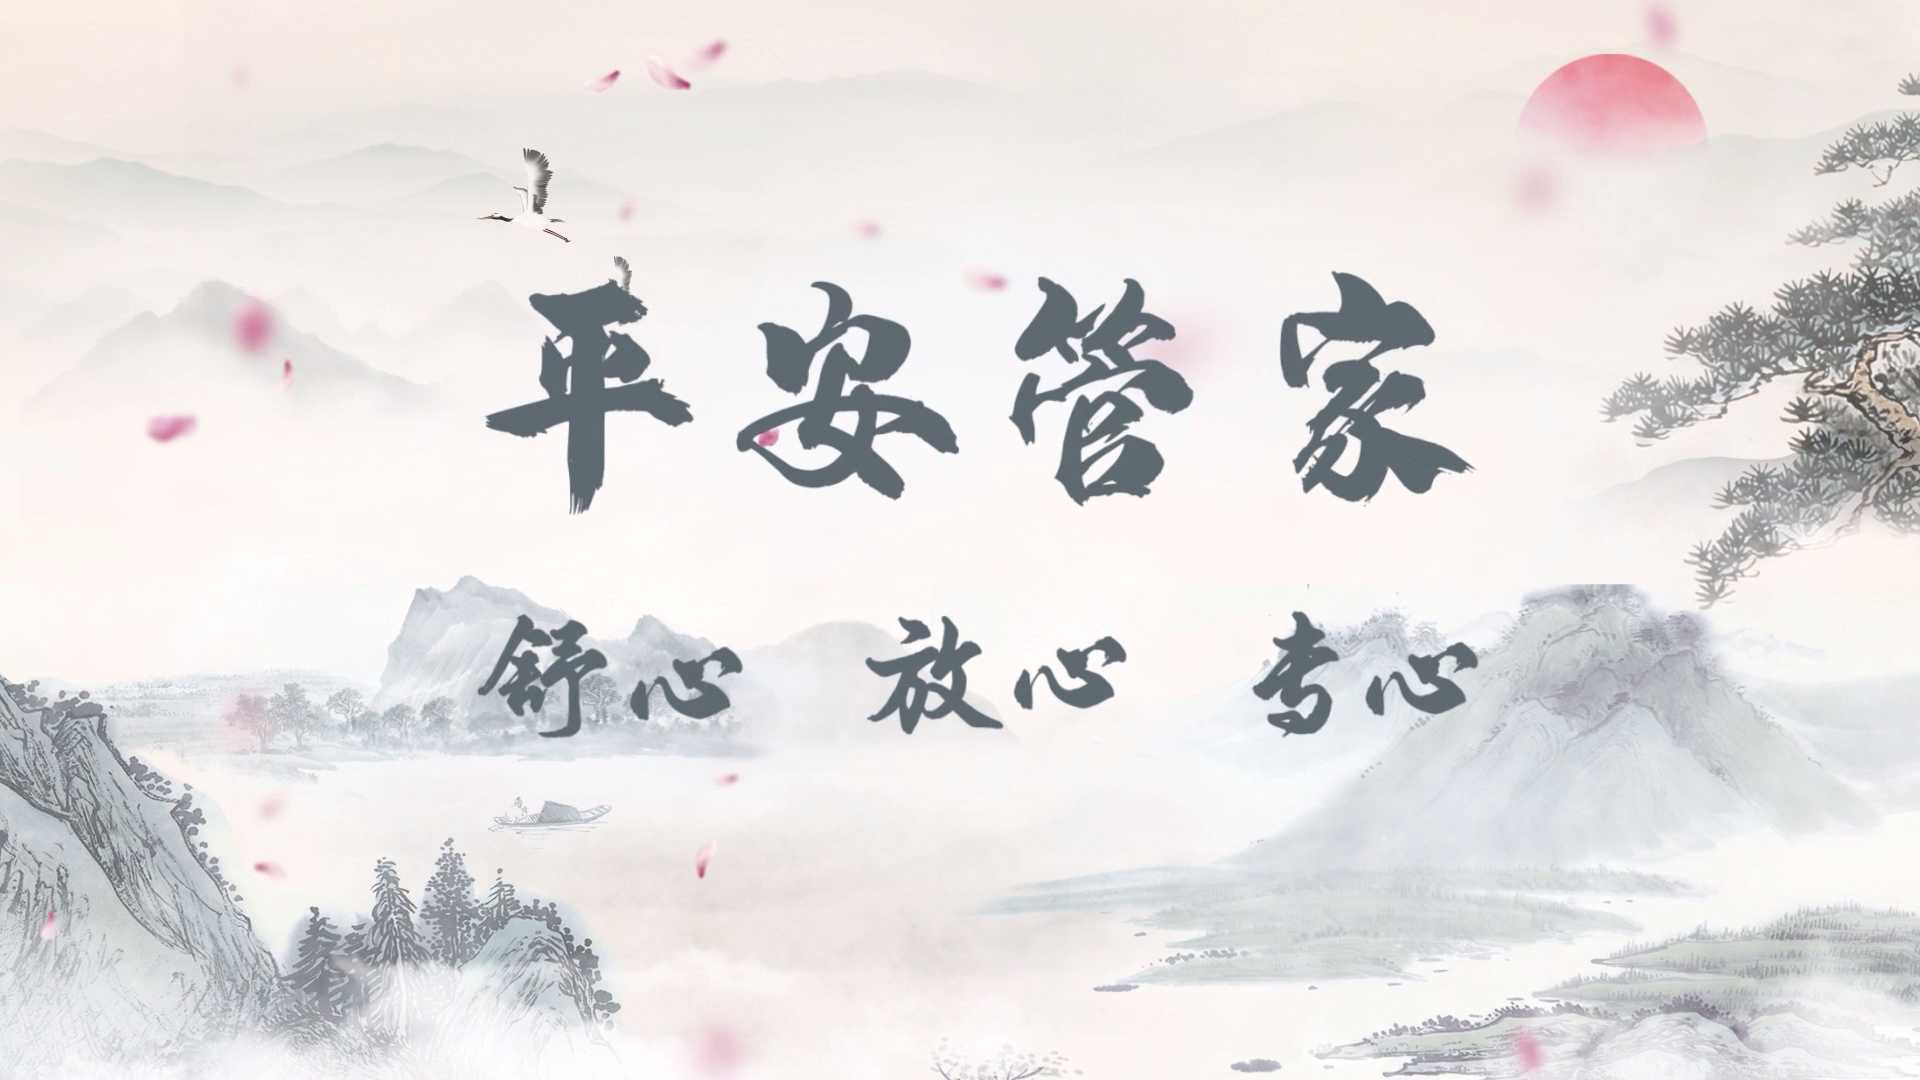 中国平安·居家养老品牌片《诗意逍遥》